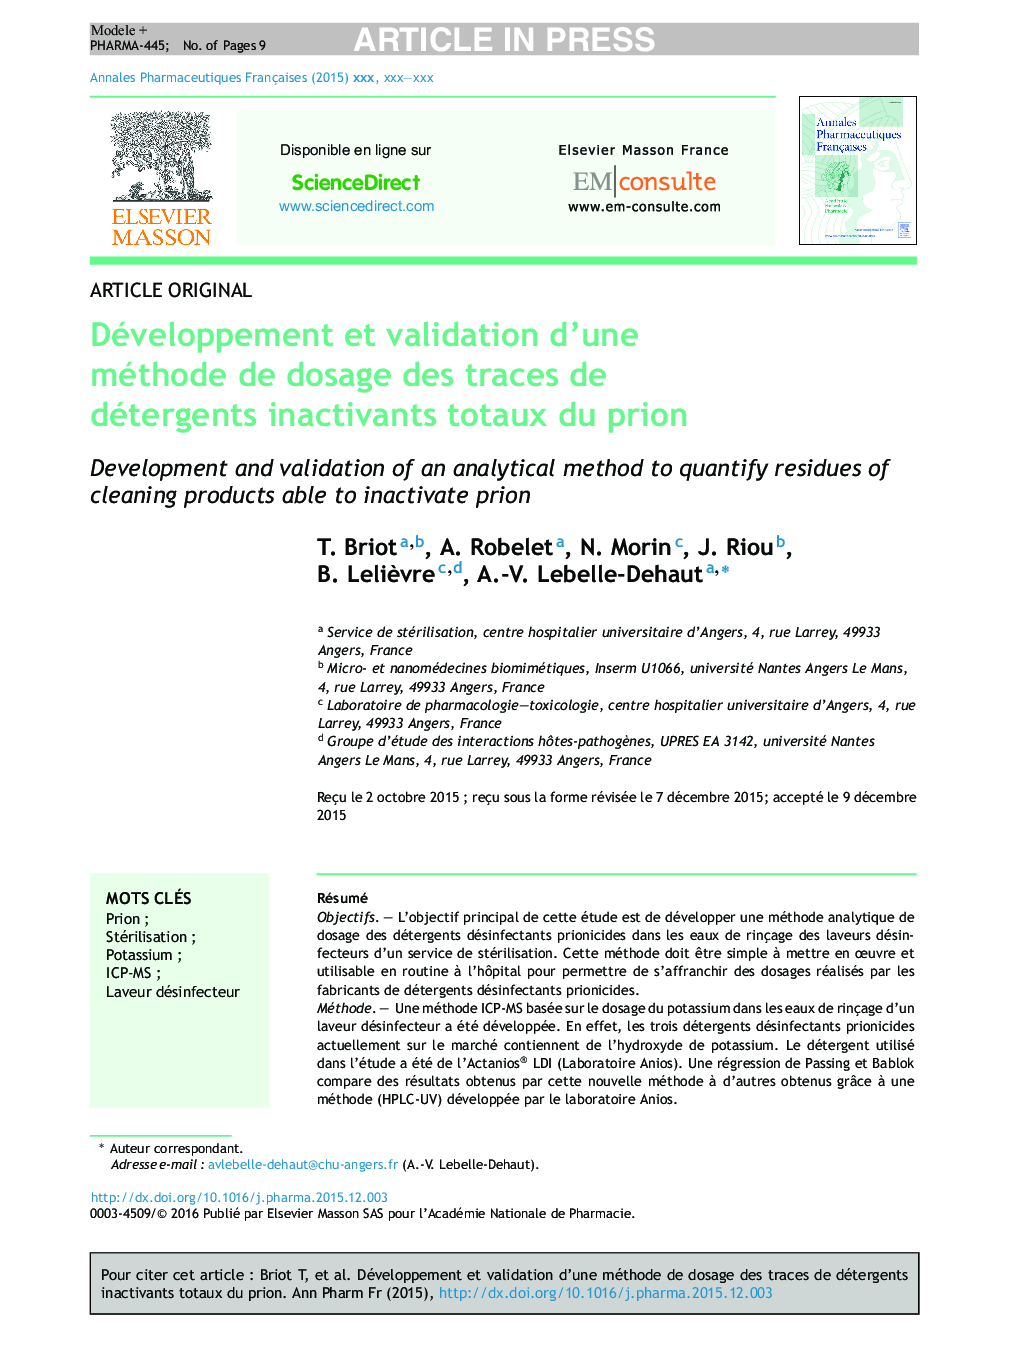 Développement et validation d'une méthode de dosage des traces de détergents inactivants totaux du prion